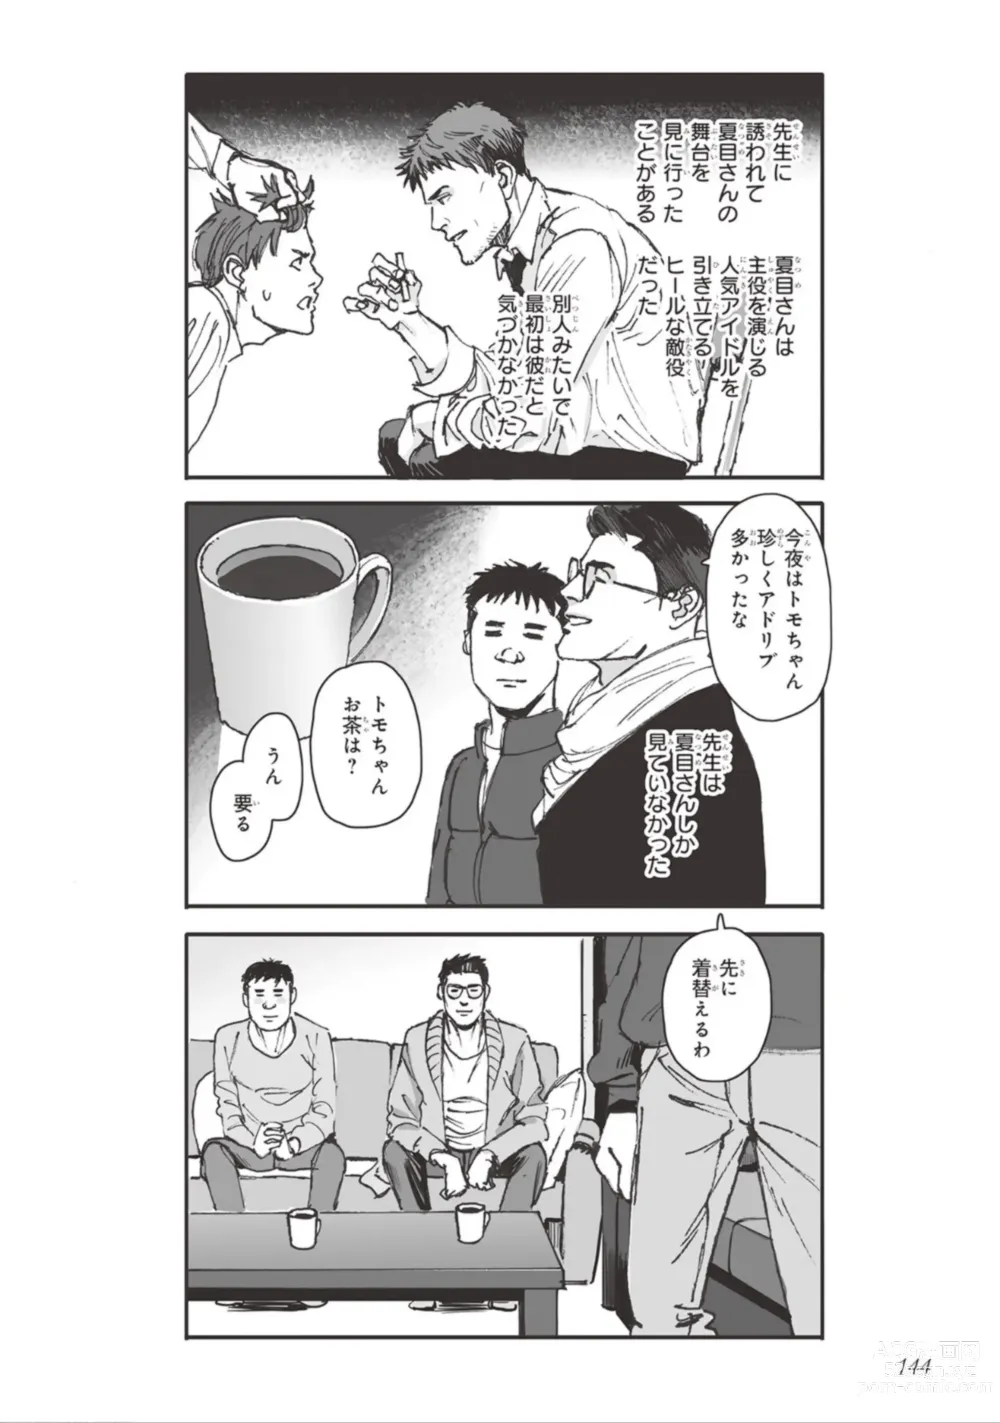 Page 146 of manga Bara to Tanpopo - Rose & Dandelion Jou